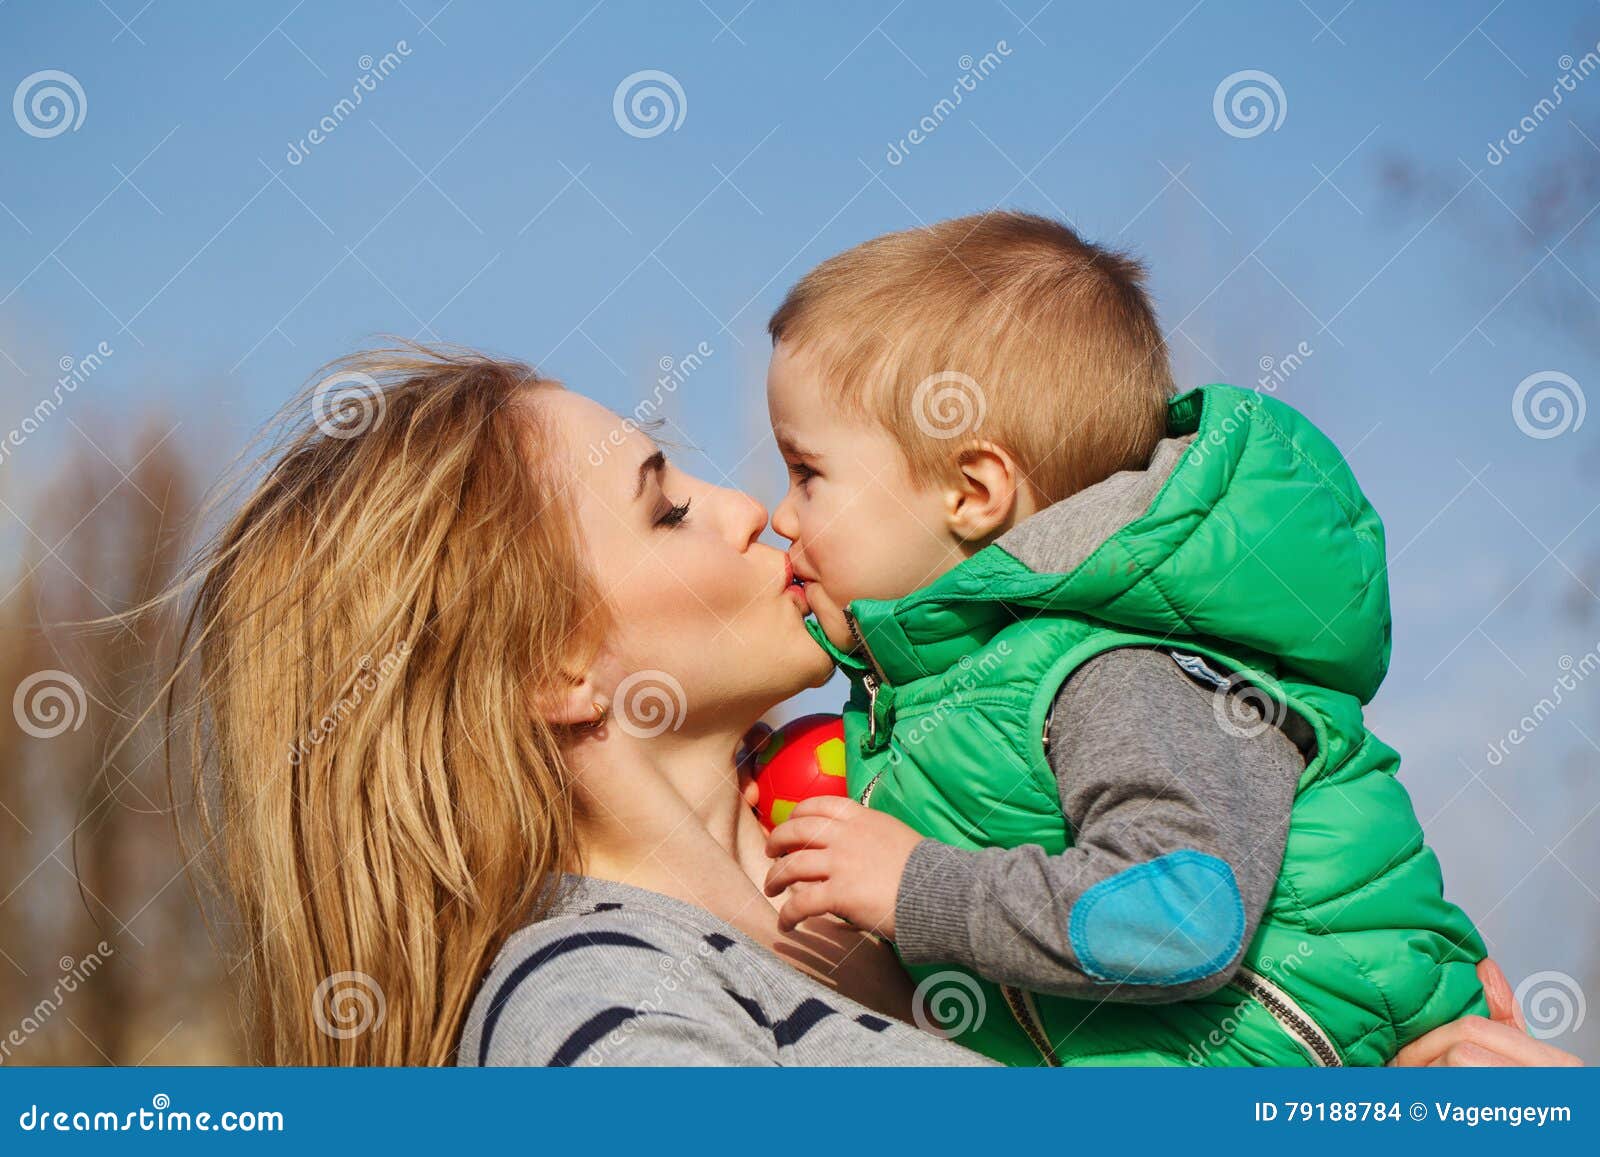 Видео целовать маму. Мама целует сына. Мама целует сына помадой. Мать целует сына фото. Что такое мать с комплексом сына.